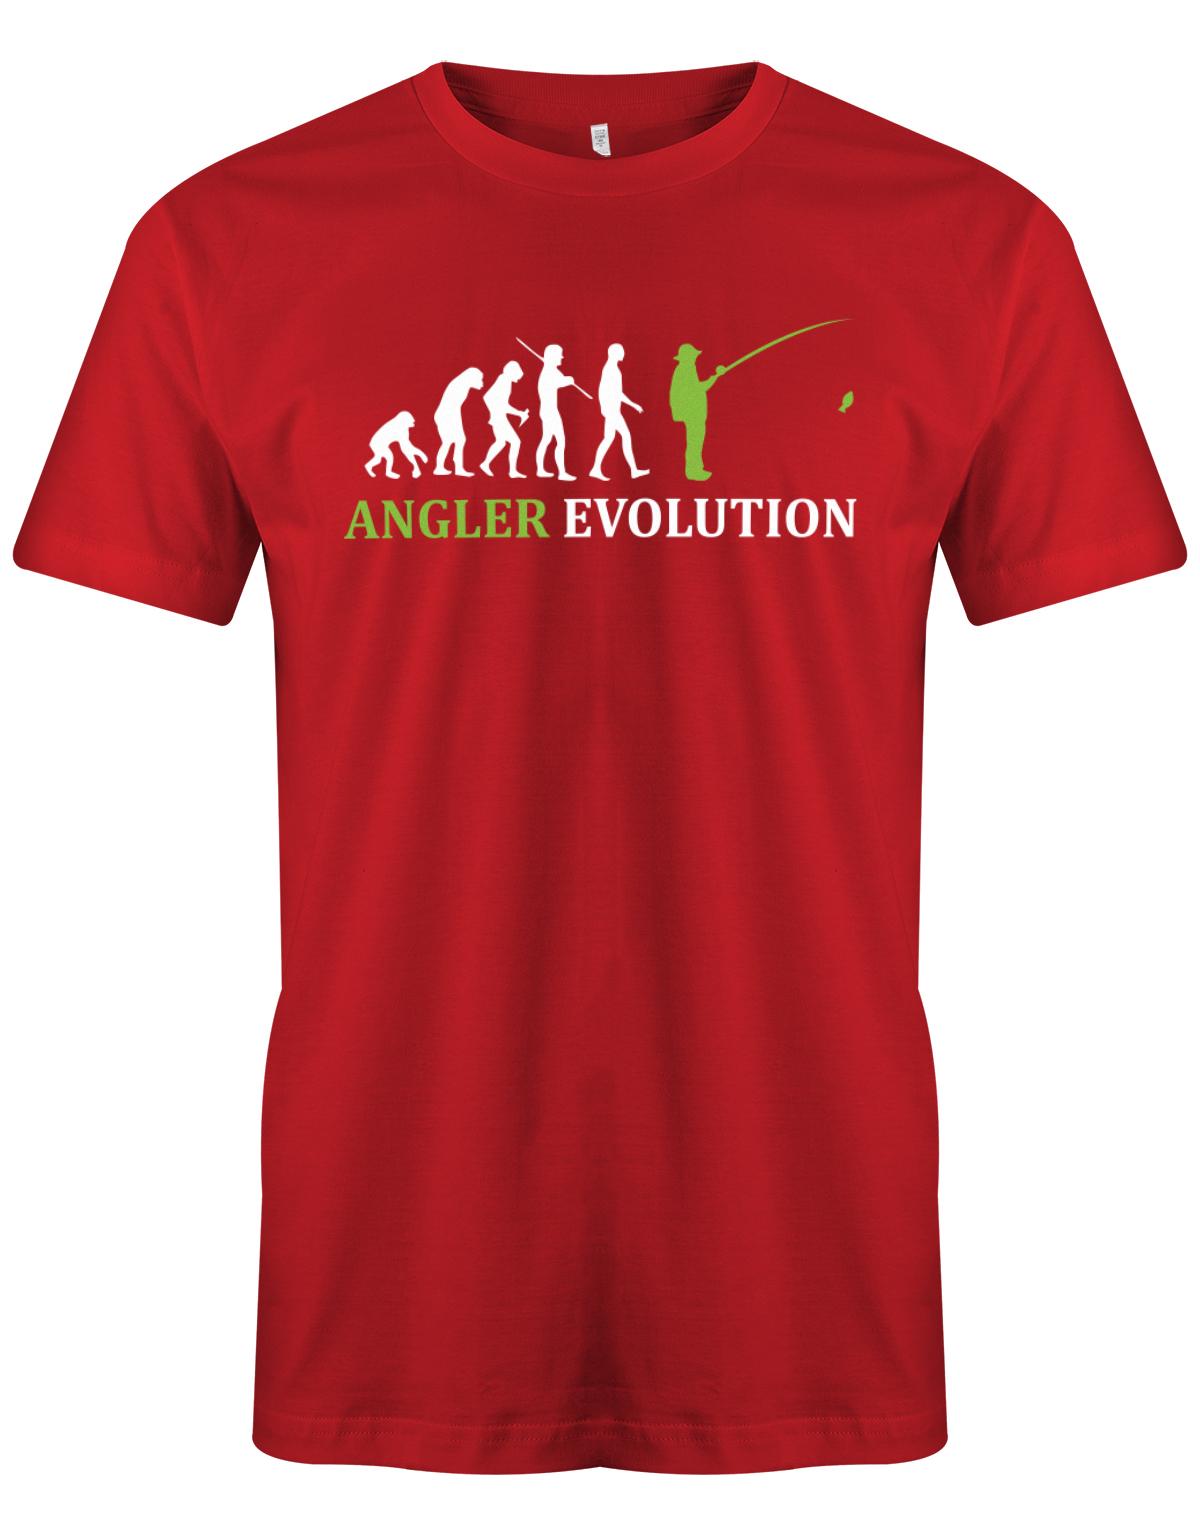 Angler-Evolution-Herren-Shirt-Rot